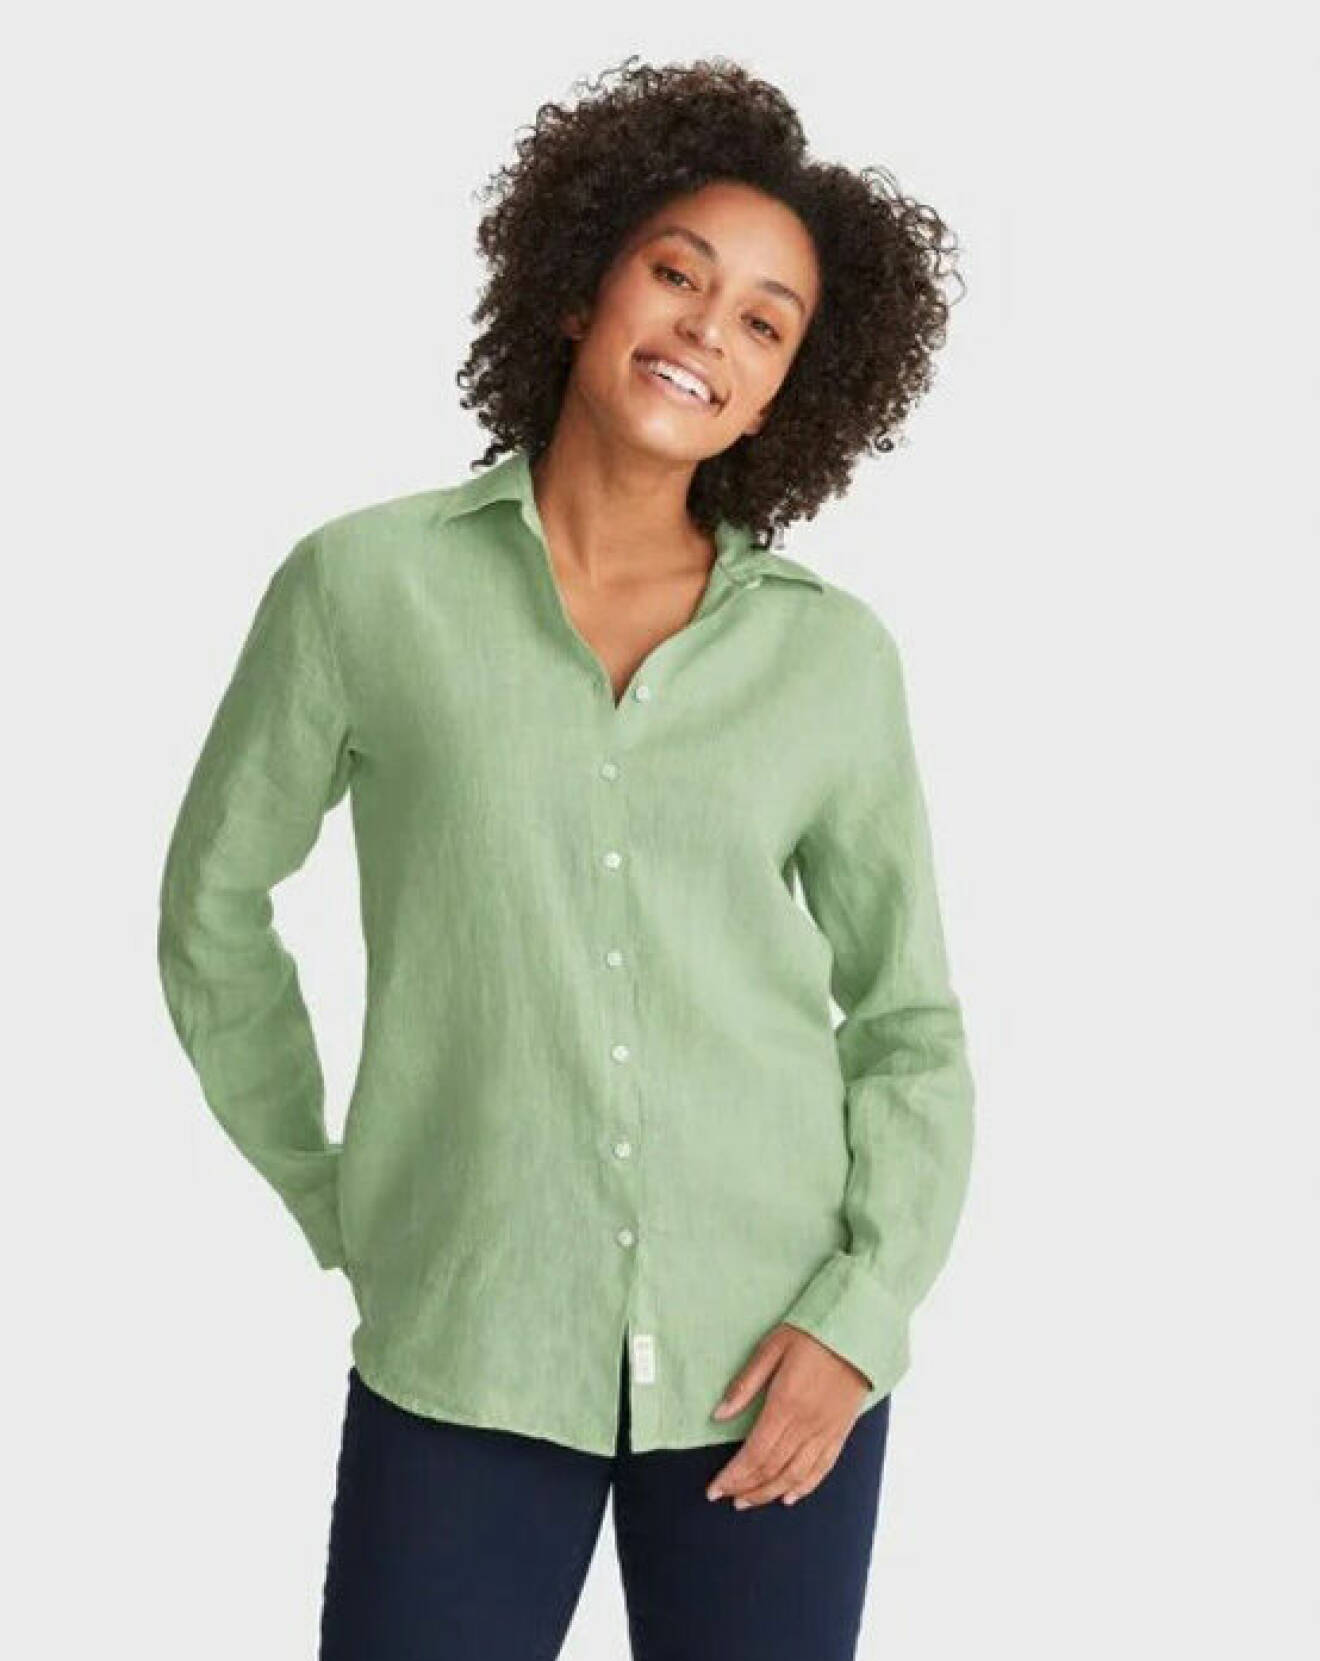 sommarkläder 2022 – grön linneskjorta för dam från Newhouse